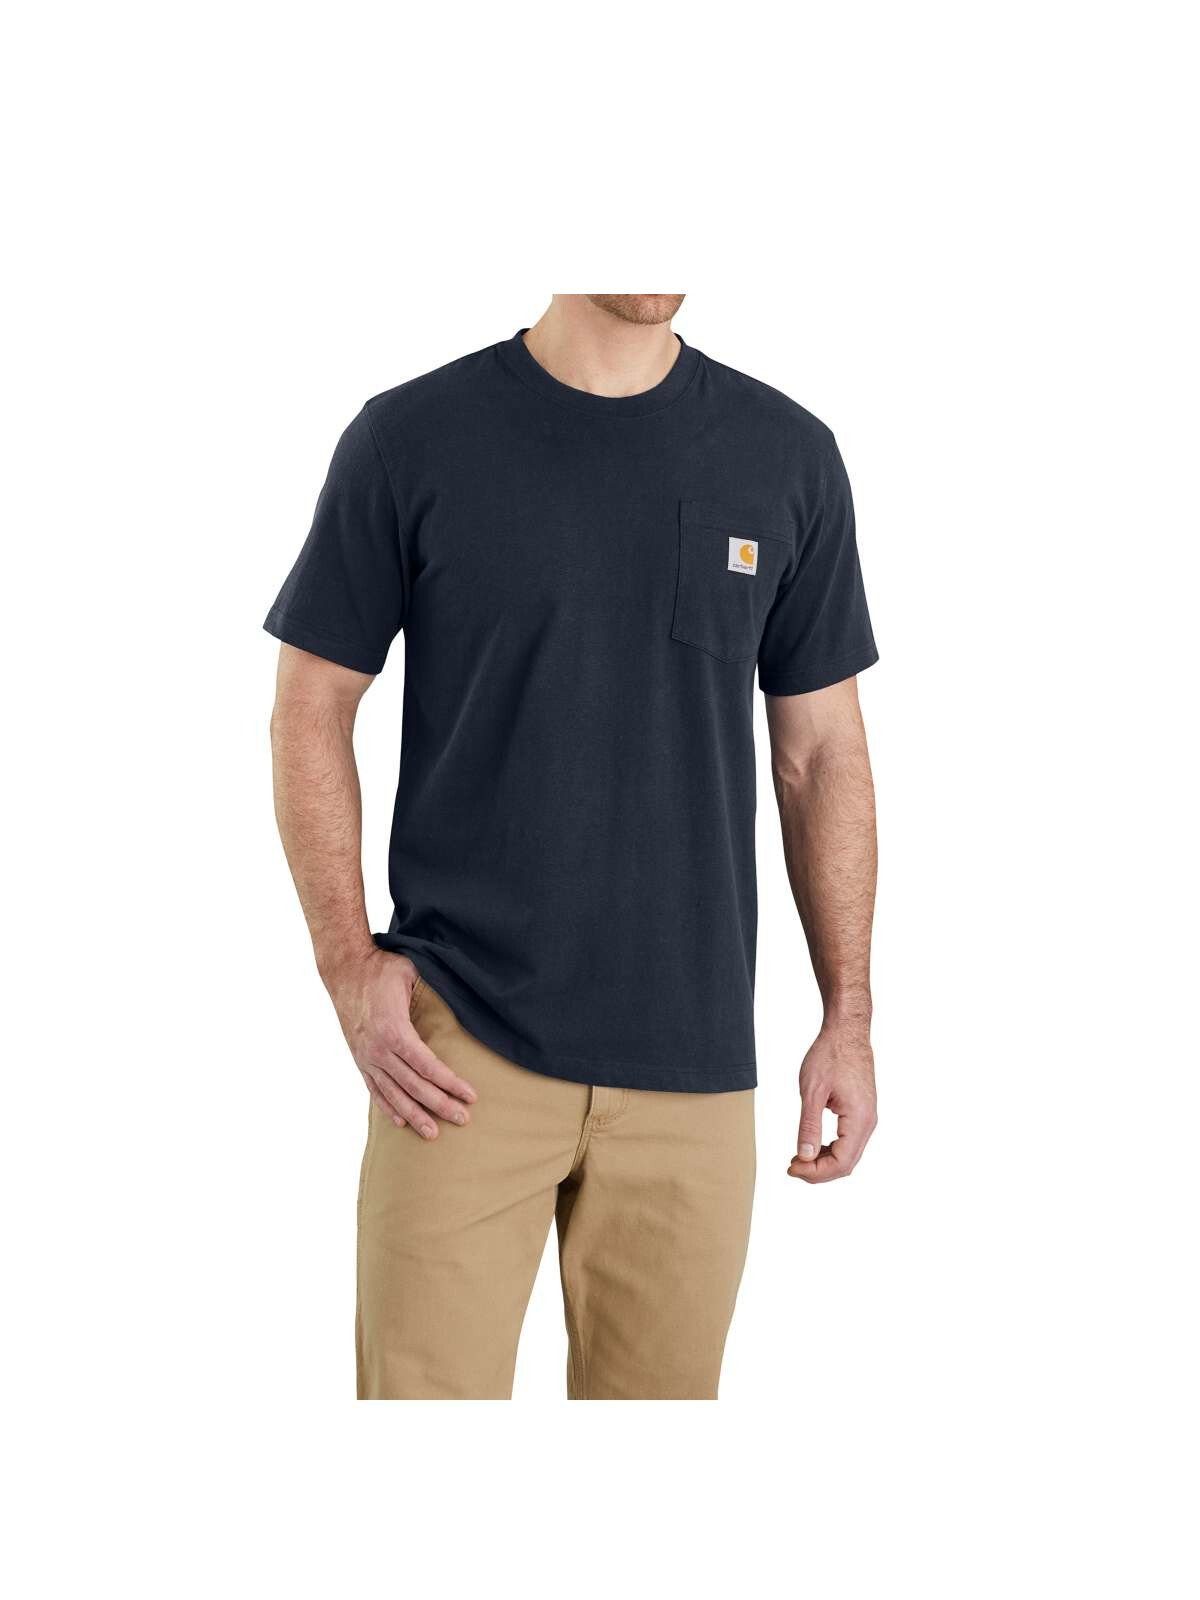 T-Shirt Carhartt schwarz Herren T-Shirt NAVY Pocket Carhartt